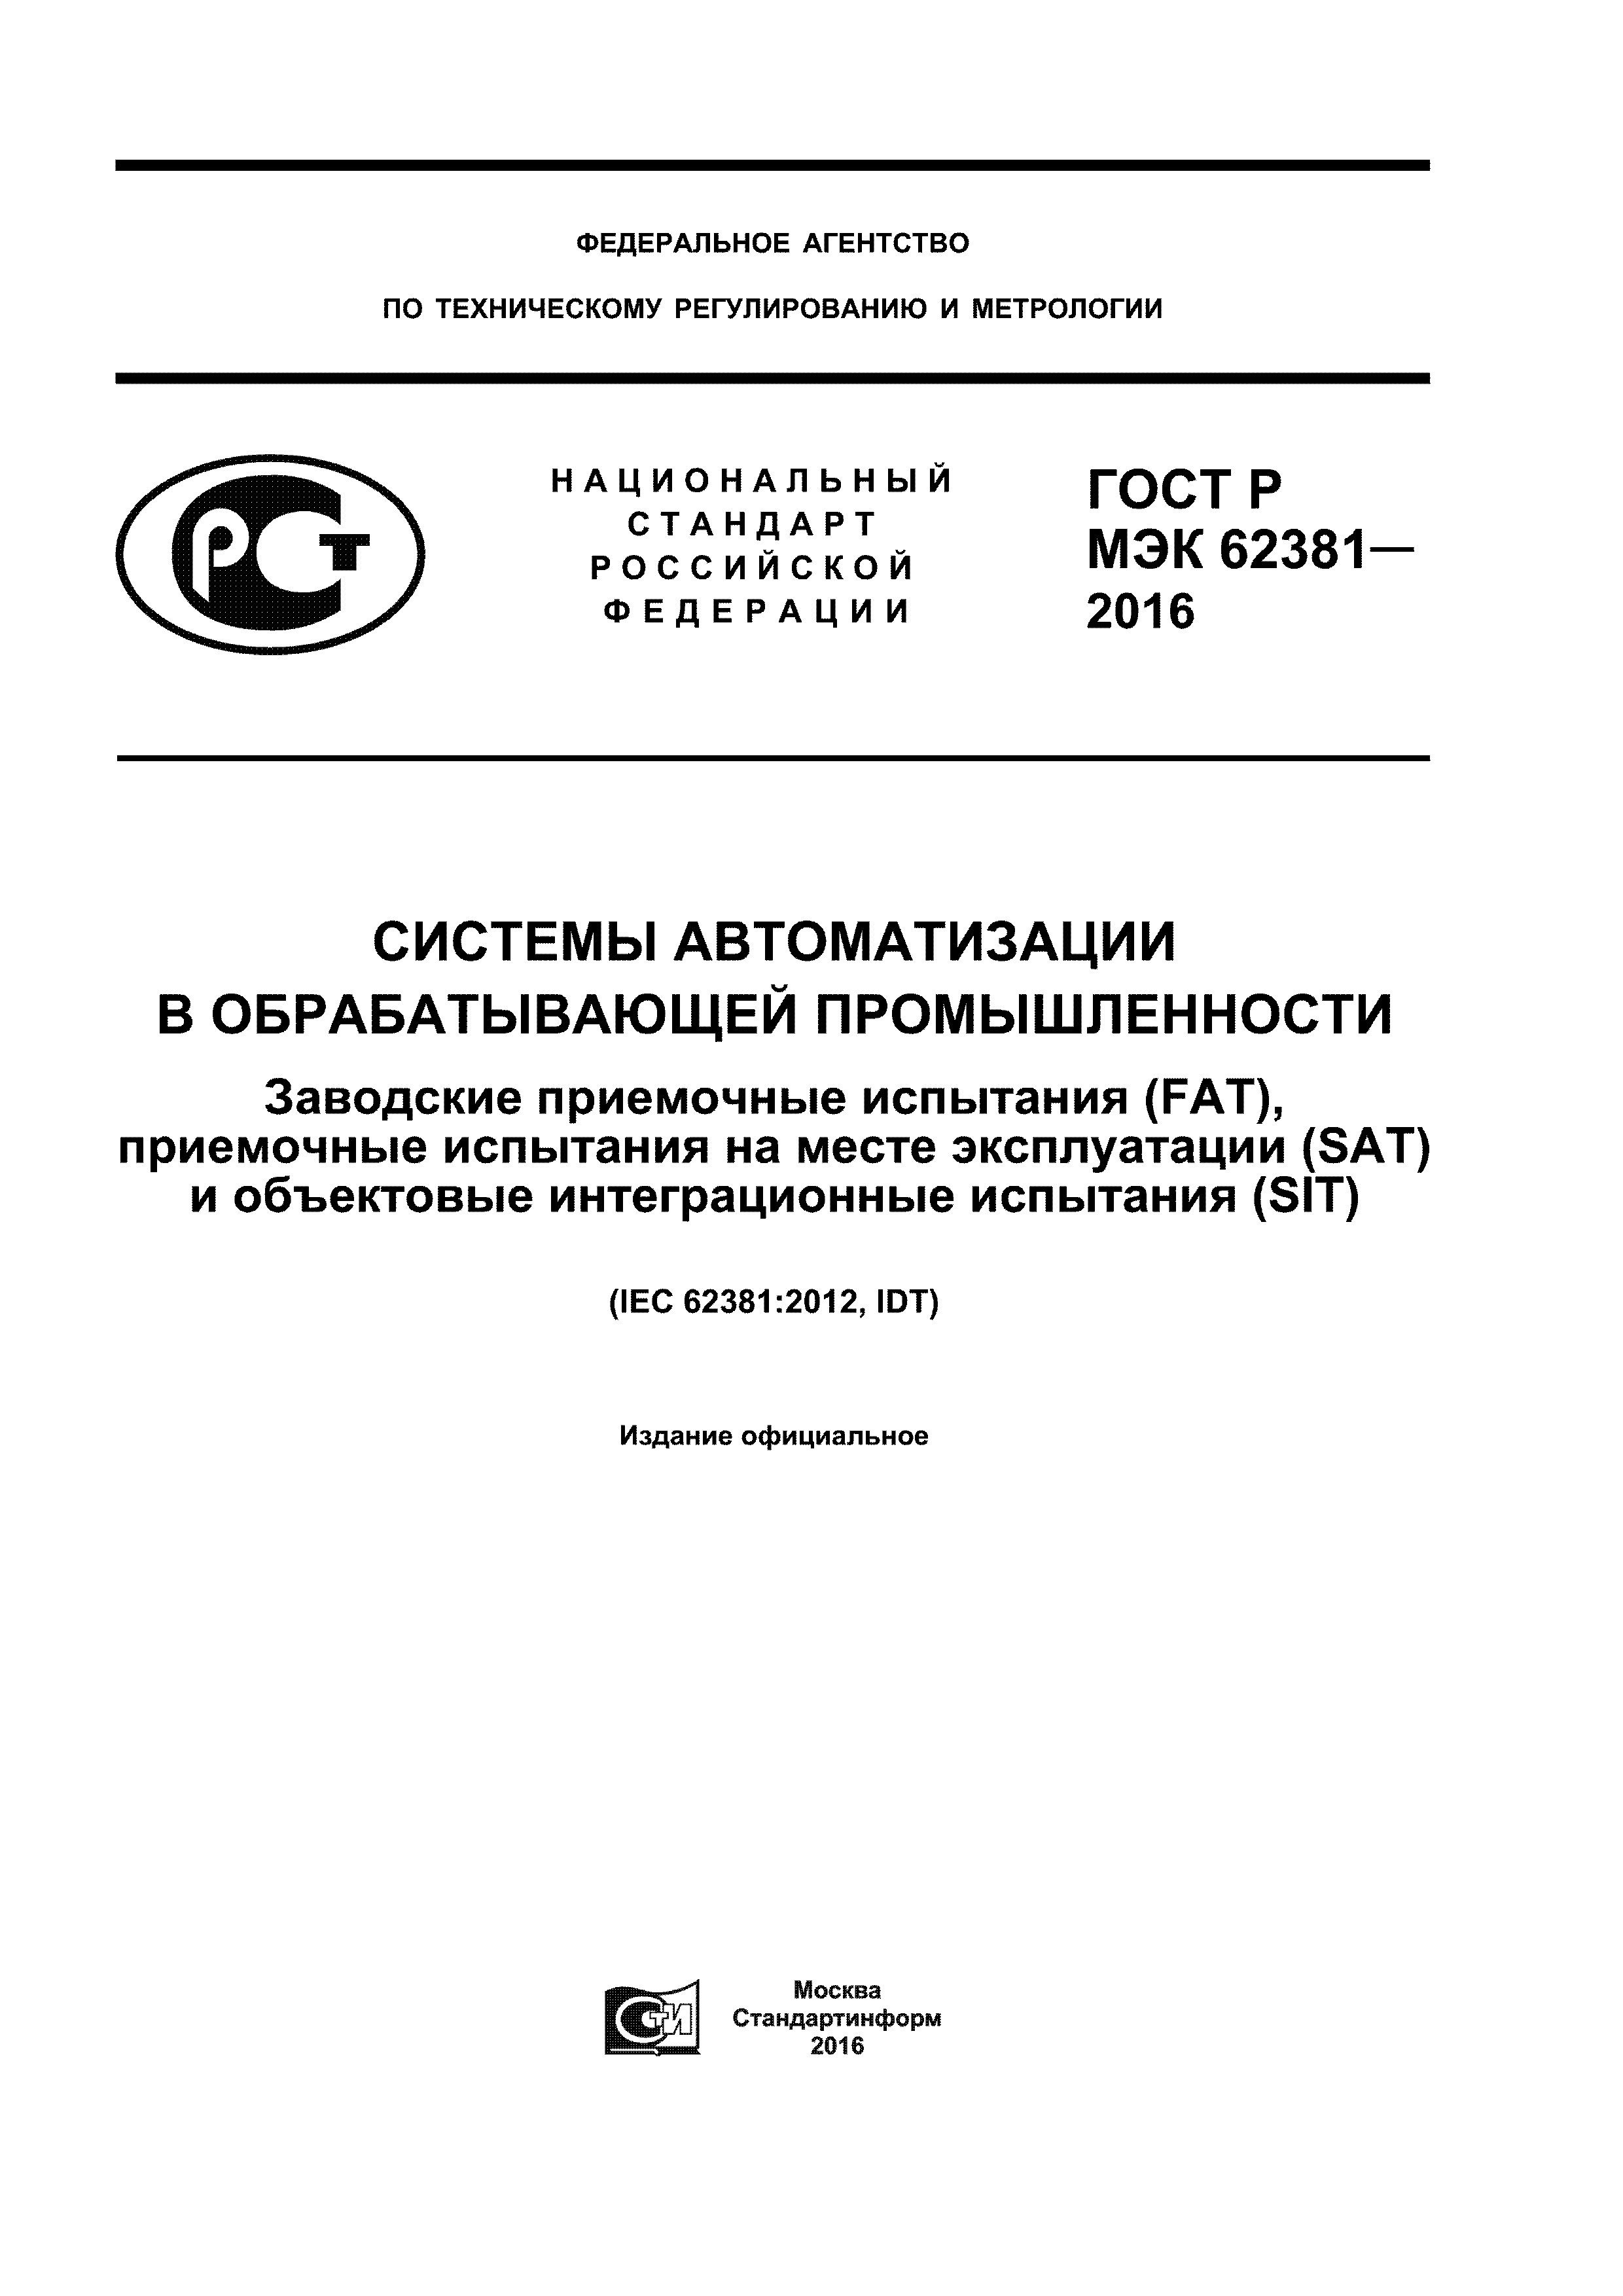 ГОСТ Р МЭК 62381-2016